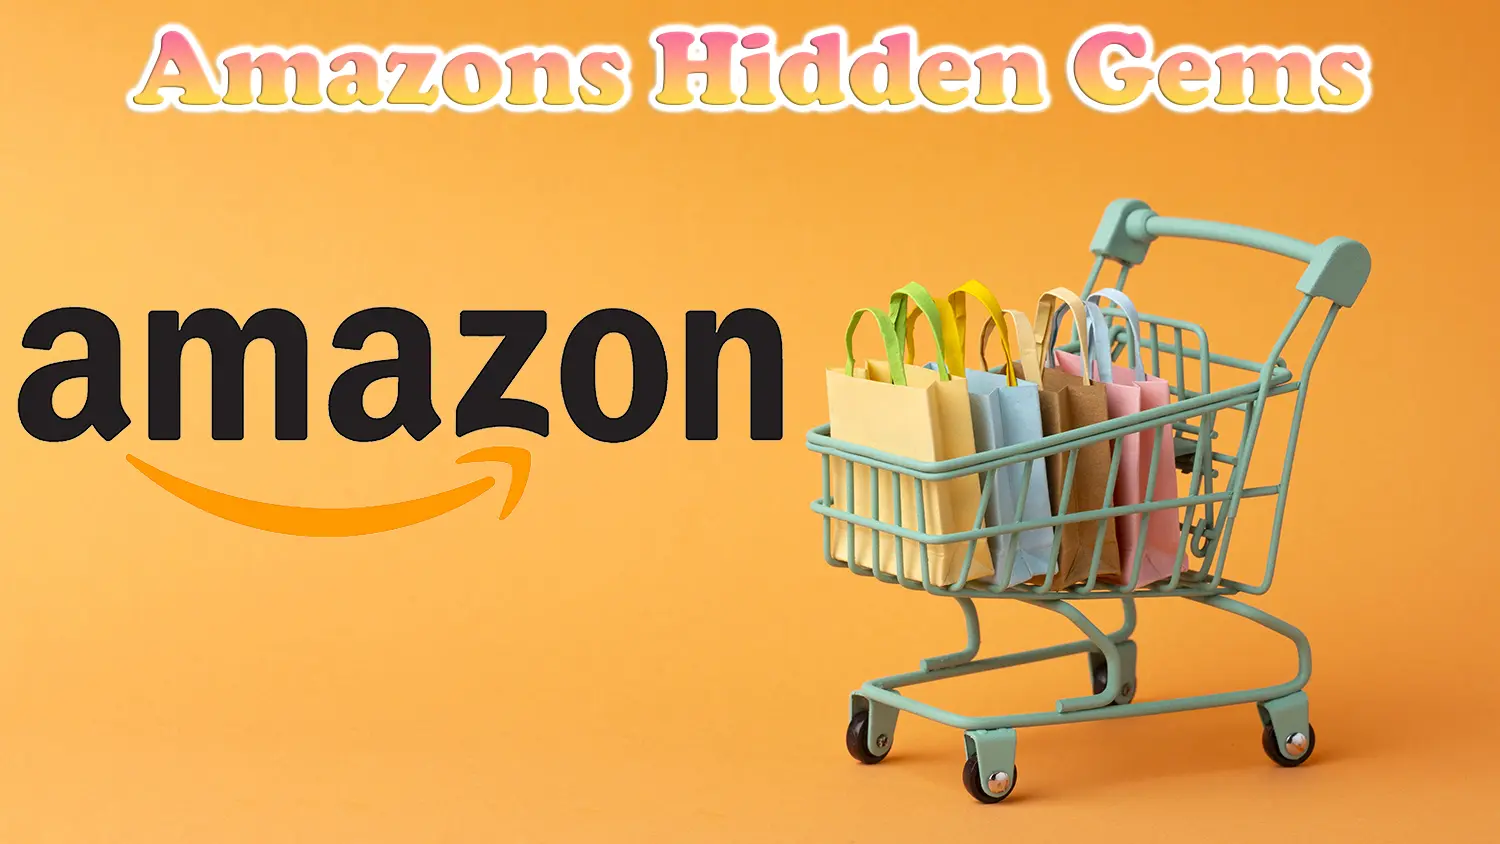 Amazon Hidden Gems